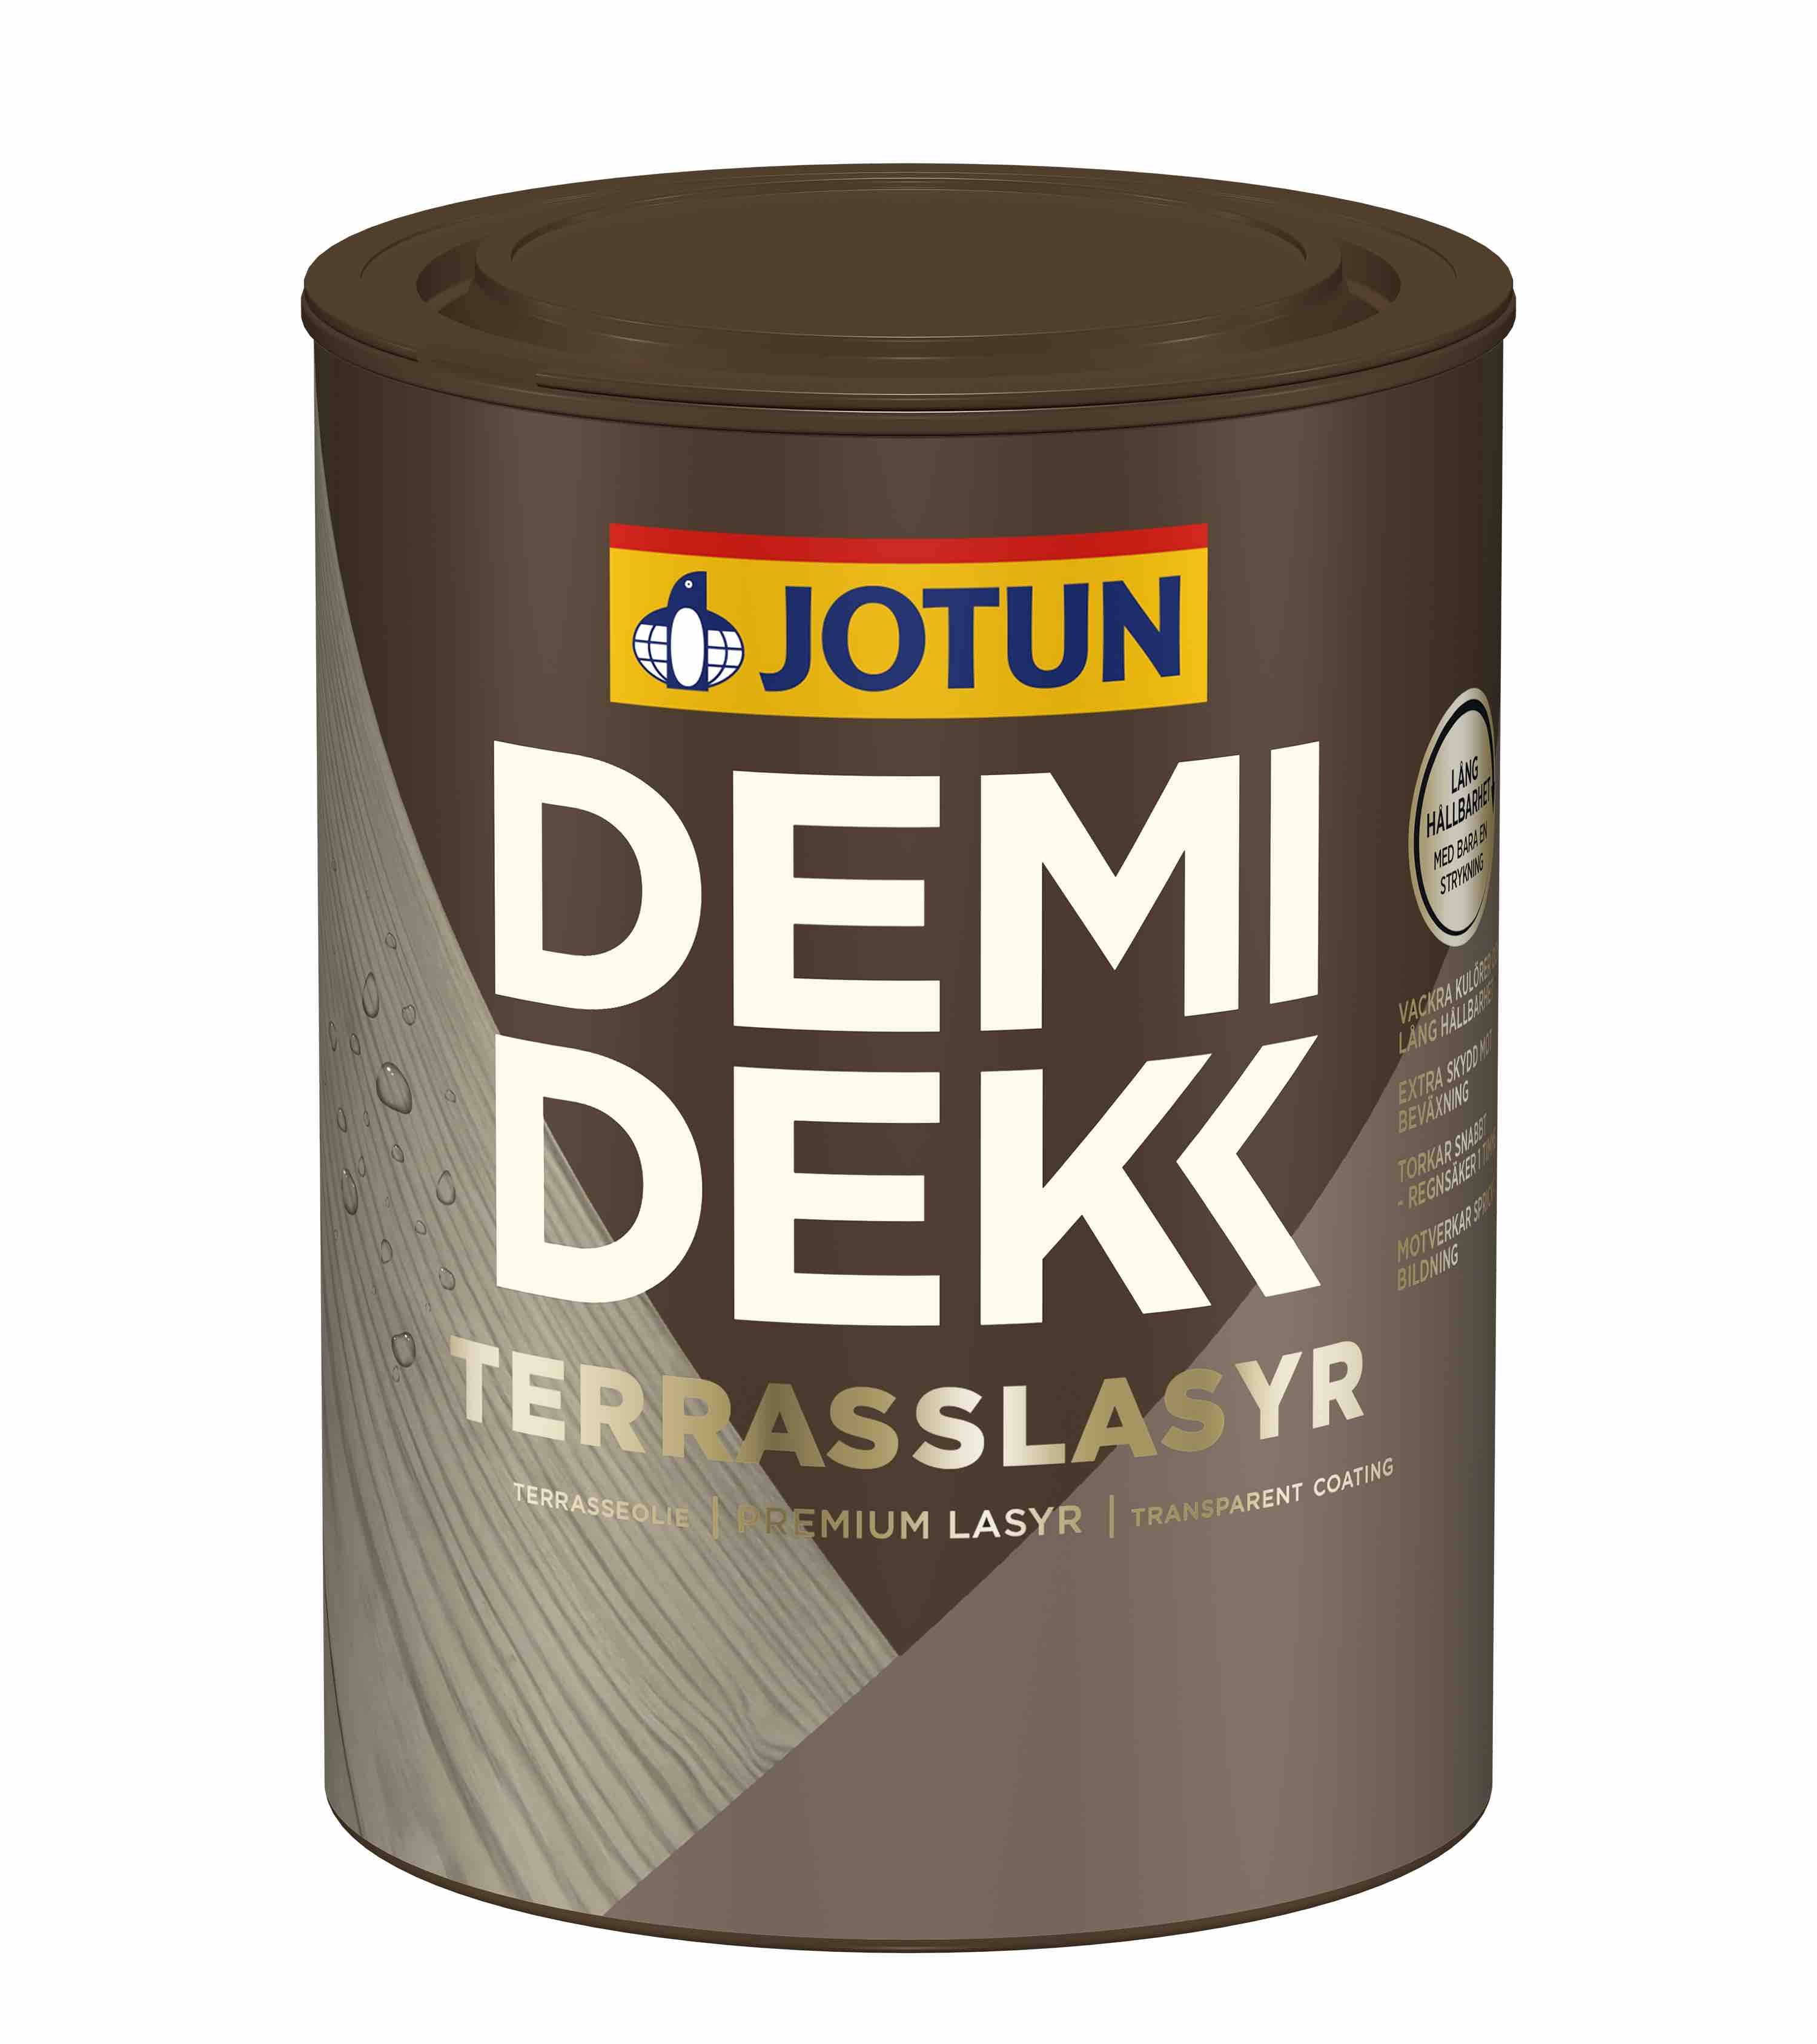 Jotun Demidekk Terrasslasry 0,75 liter nieuwe verpakking